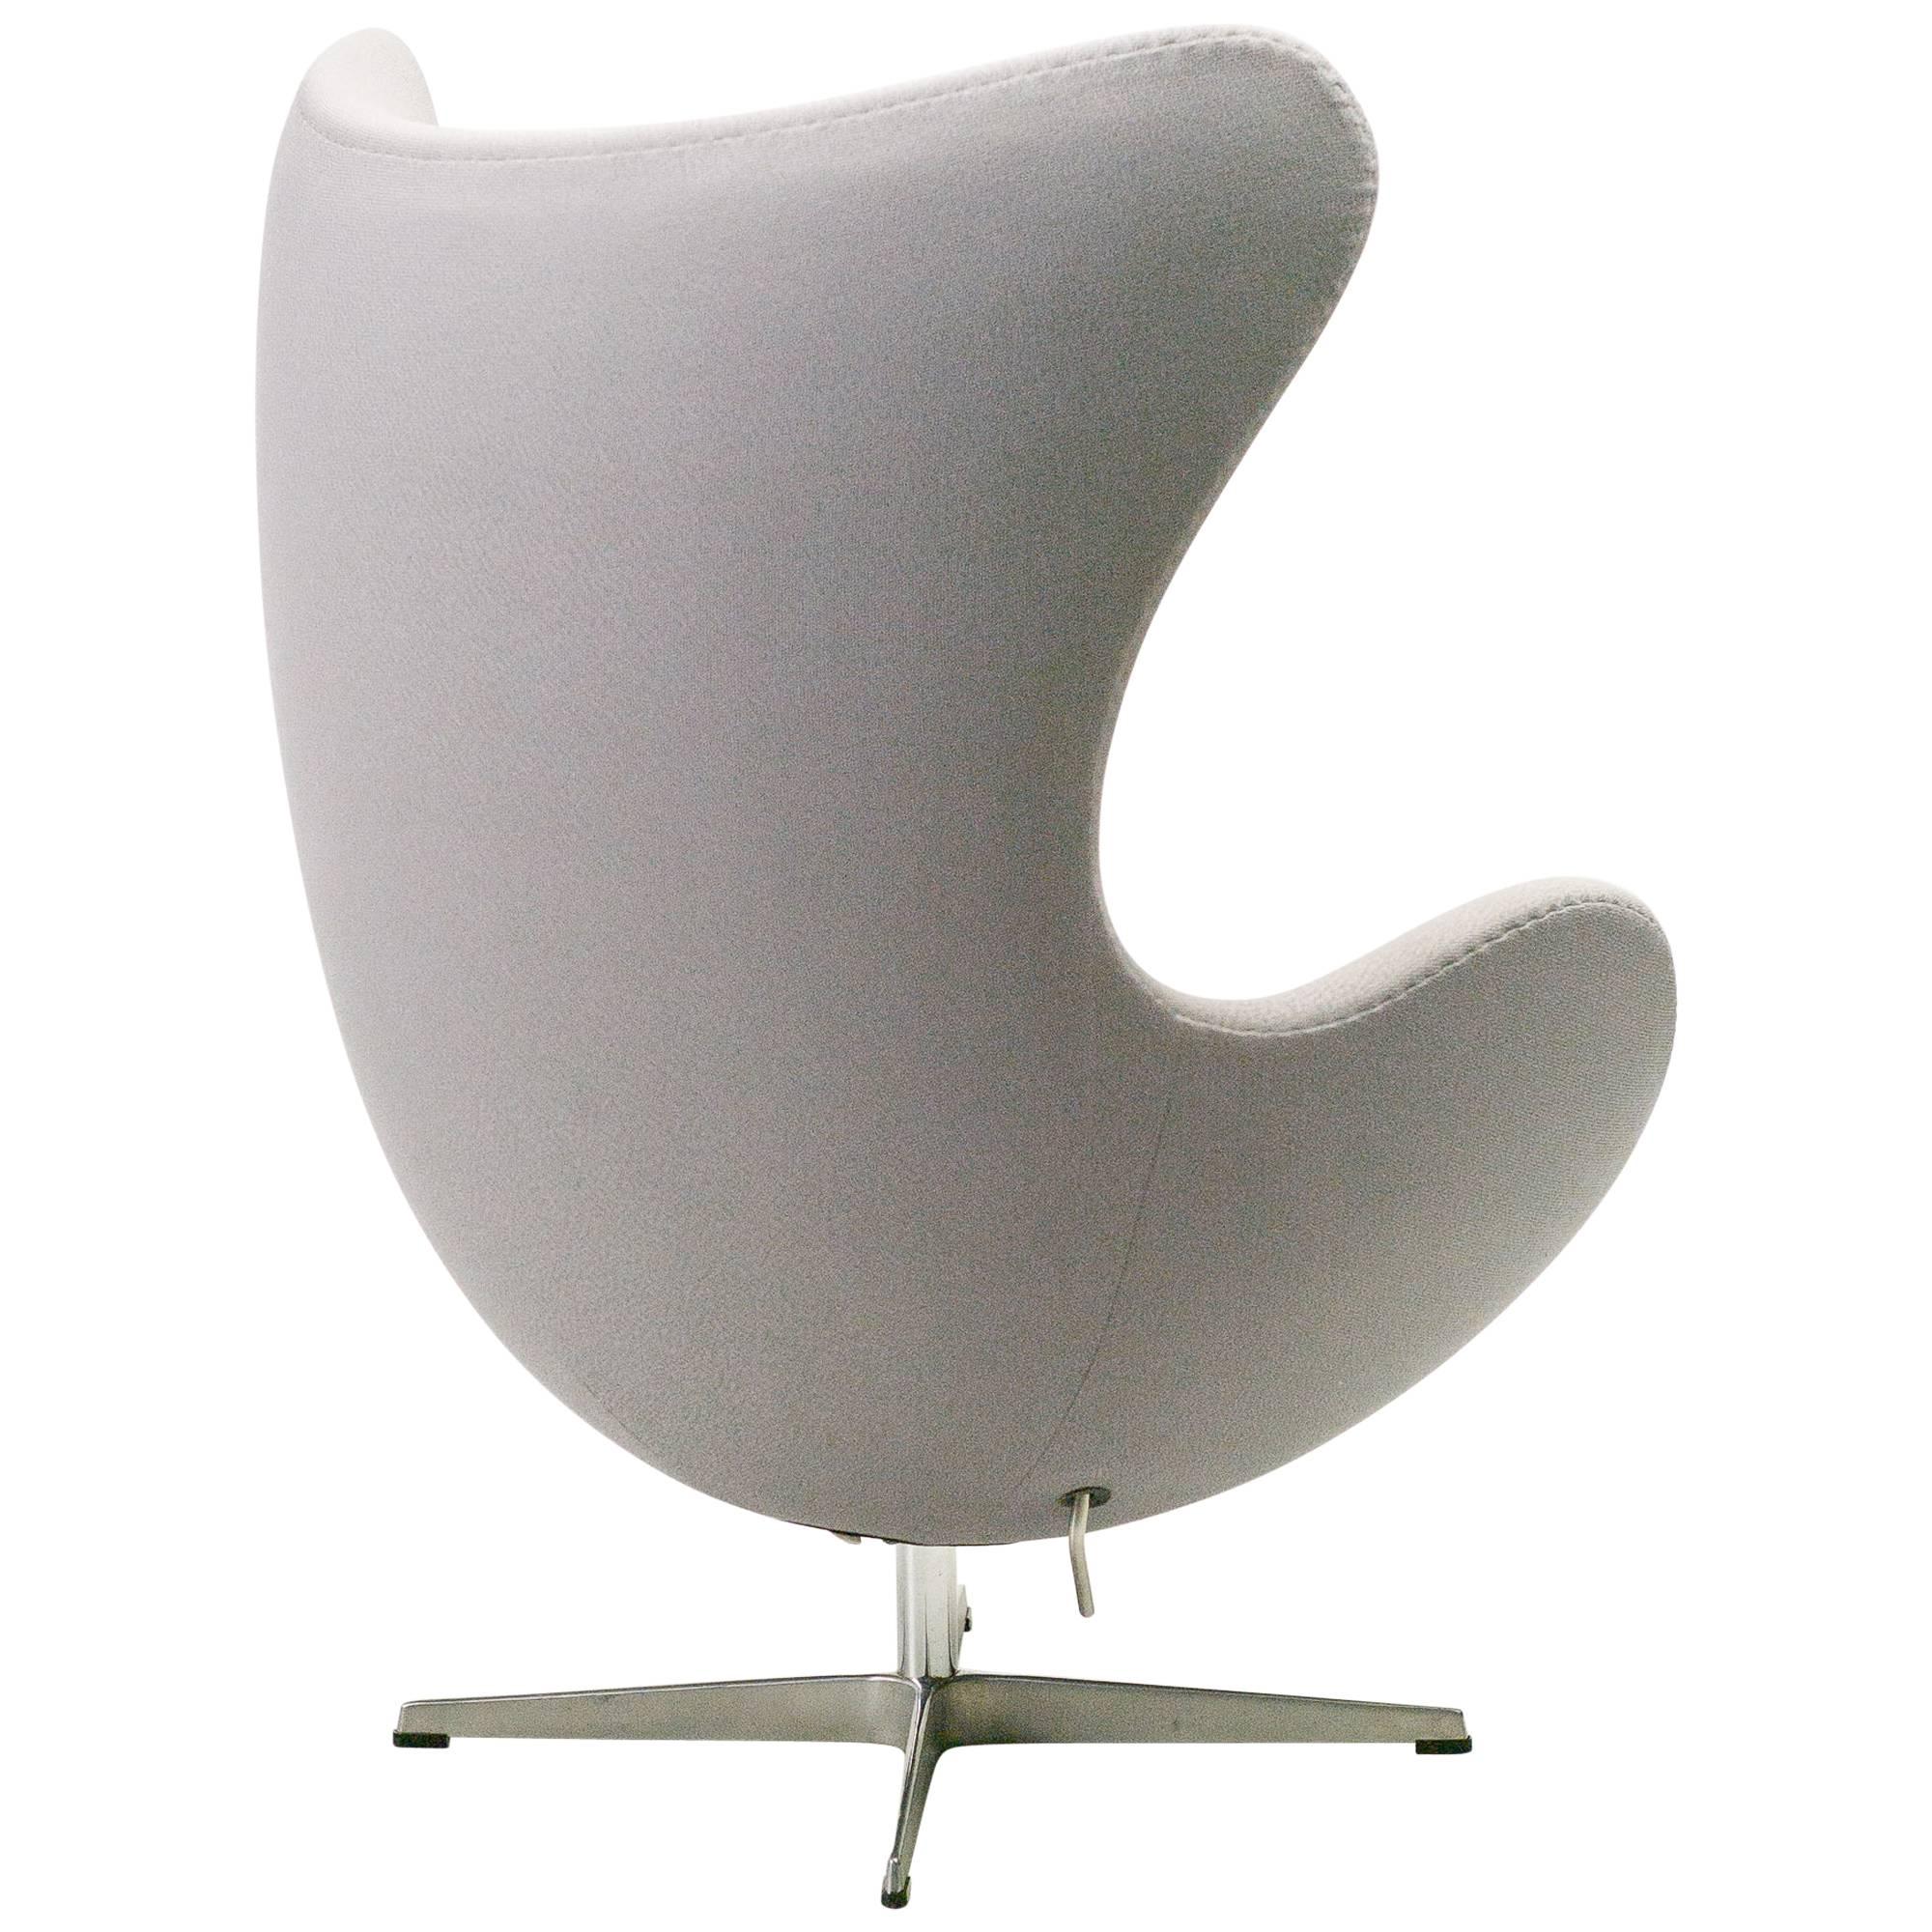 Arne Jacobsen for Fritz Hansen Egg Chair